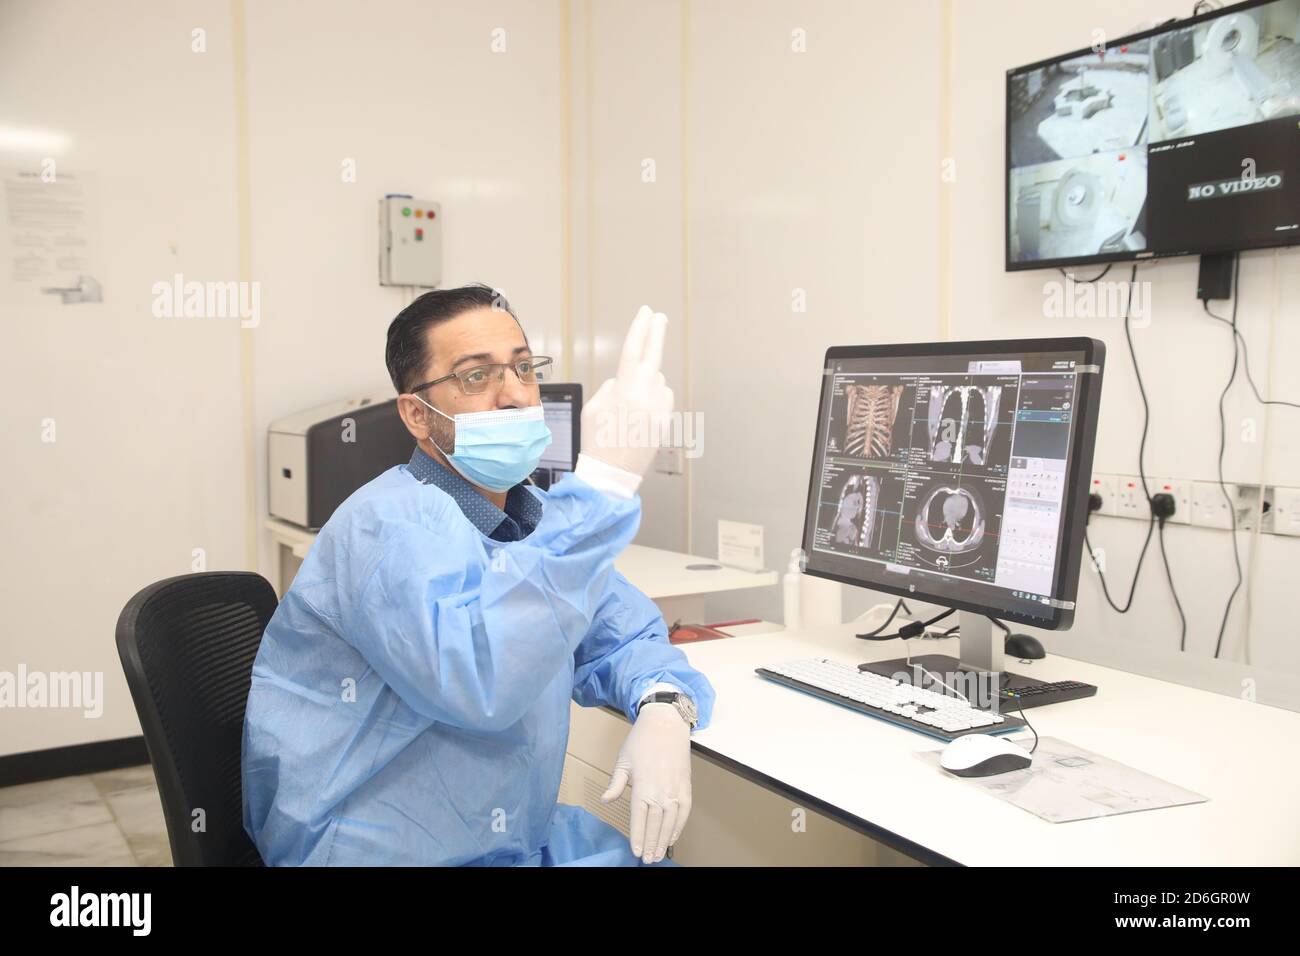 Bagdad. 17 de octubre de 2020. El Dr. Mohammed Abdul-Hussein examina imágenes pulmonares en el Centro al-Shifaa en Bagdad, Irak, 12 de octubre de 2020. En un hospital especializado del COVID-19 en la capital iraquí de Bagdad, una tomografía computarizada donada por China, equipo móvil de rayos X y otros suministros médicos están salvando vidas en la batalla de primera línea contra la pandemia del COVID-19. Ya 400 pacientes se han beneficiado de la importante donación médica. PARA IR CON 'Potlight: Chino-donó CT scan, rayos X móviles salvar vidas en el hospital COVID-19 especializado en Irak' crédito: Xinhua/Alamy Live News Foto de stock